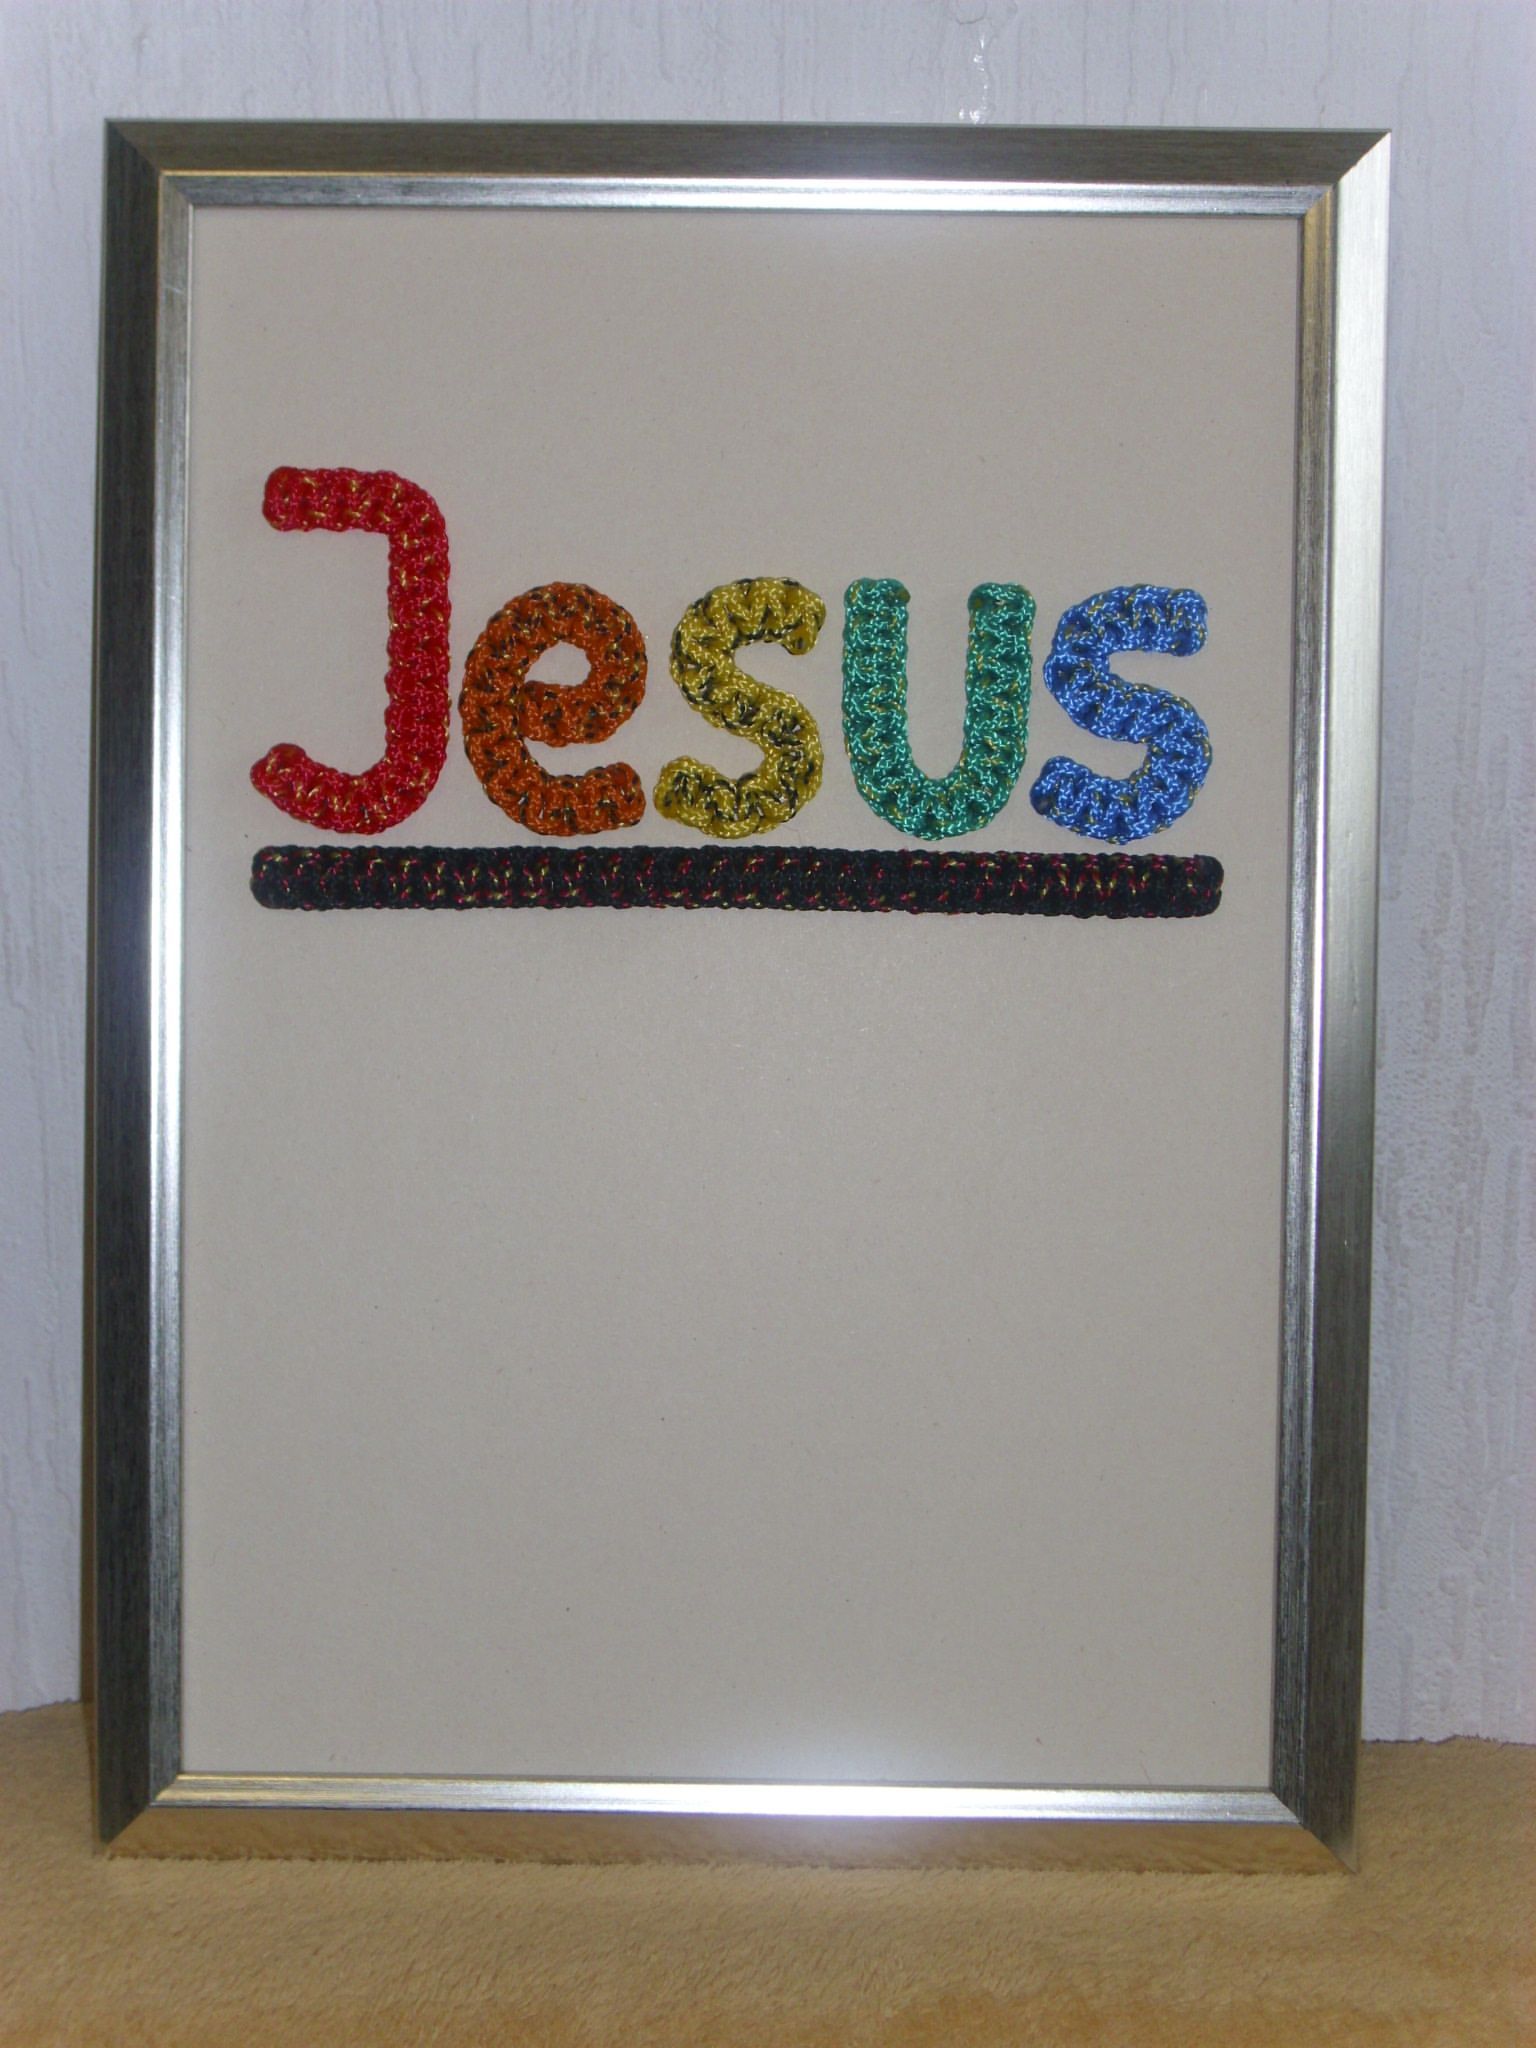 JESUS in Regenbogenfarben geknotet, mit Rahmen, ca. 32 x 24 cm, Best.Nr. 032, 35,- Euro